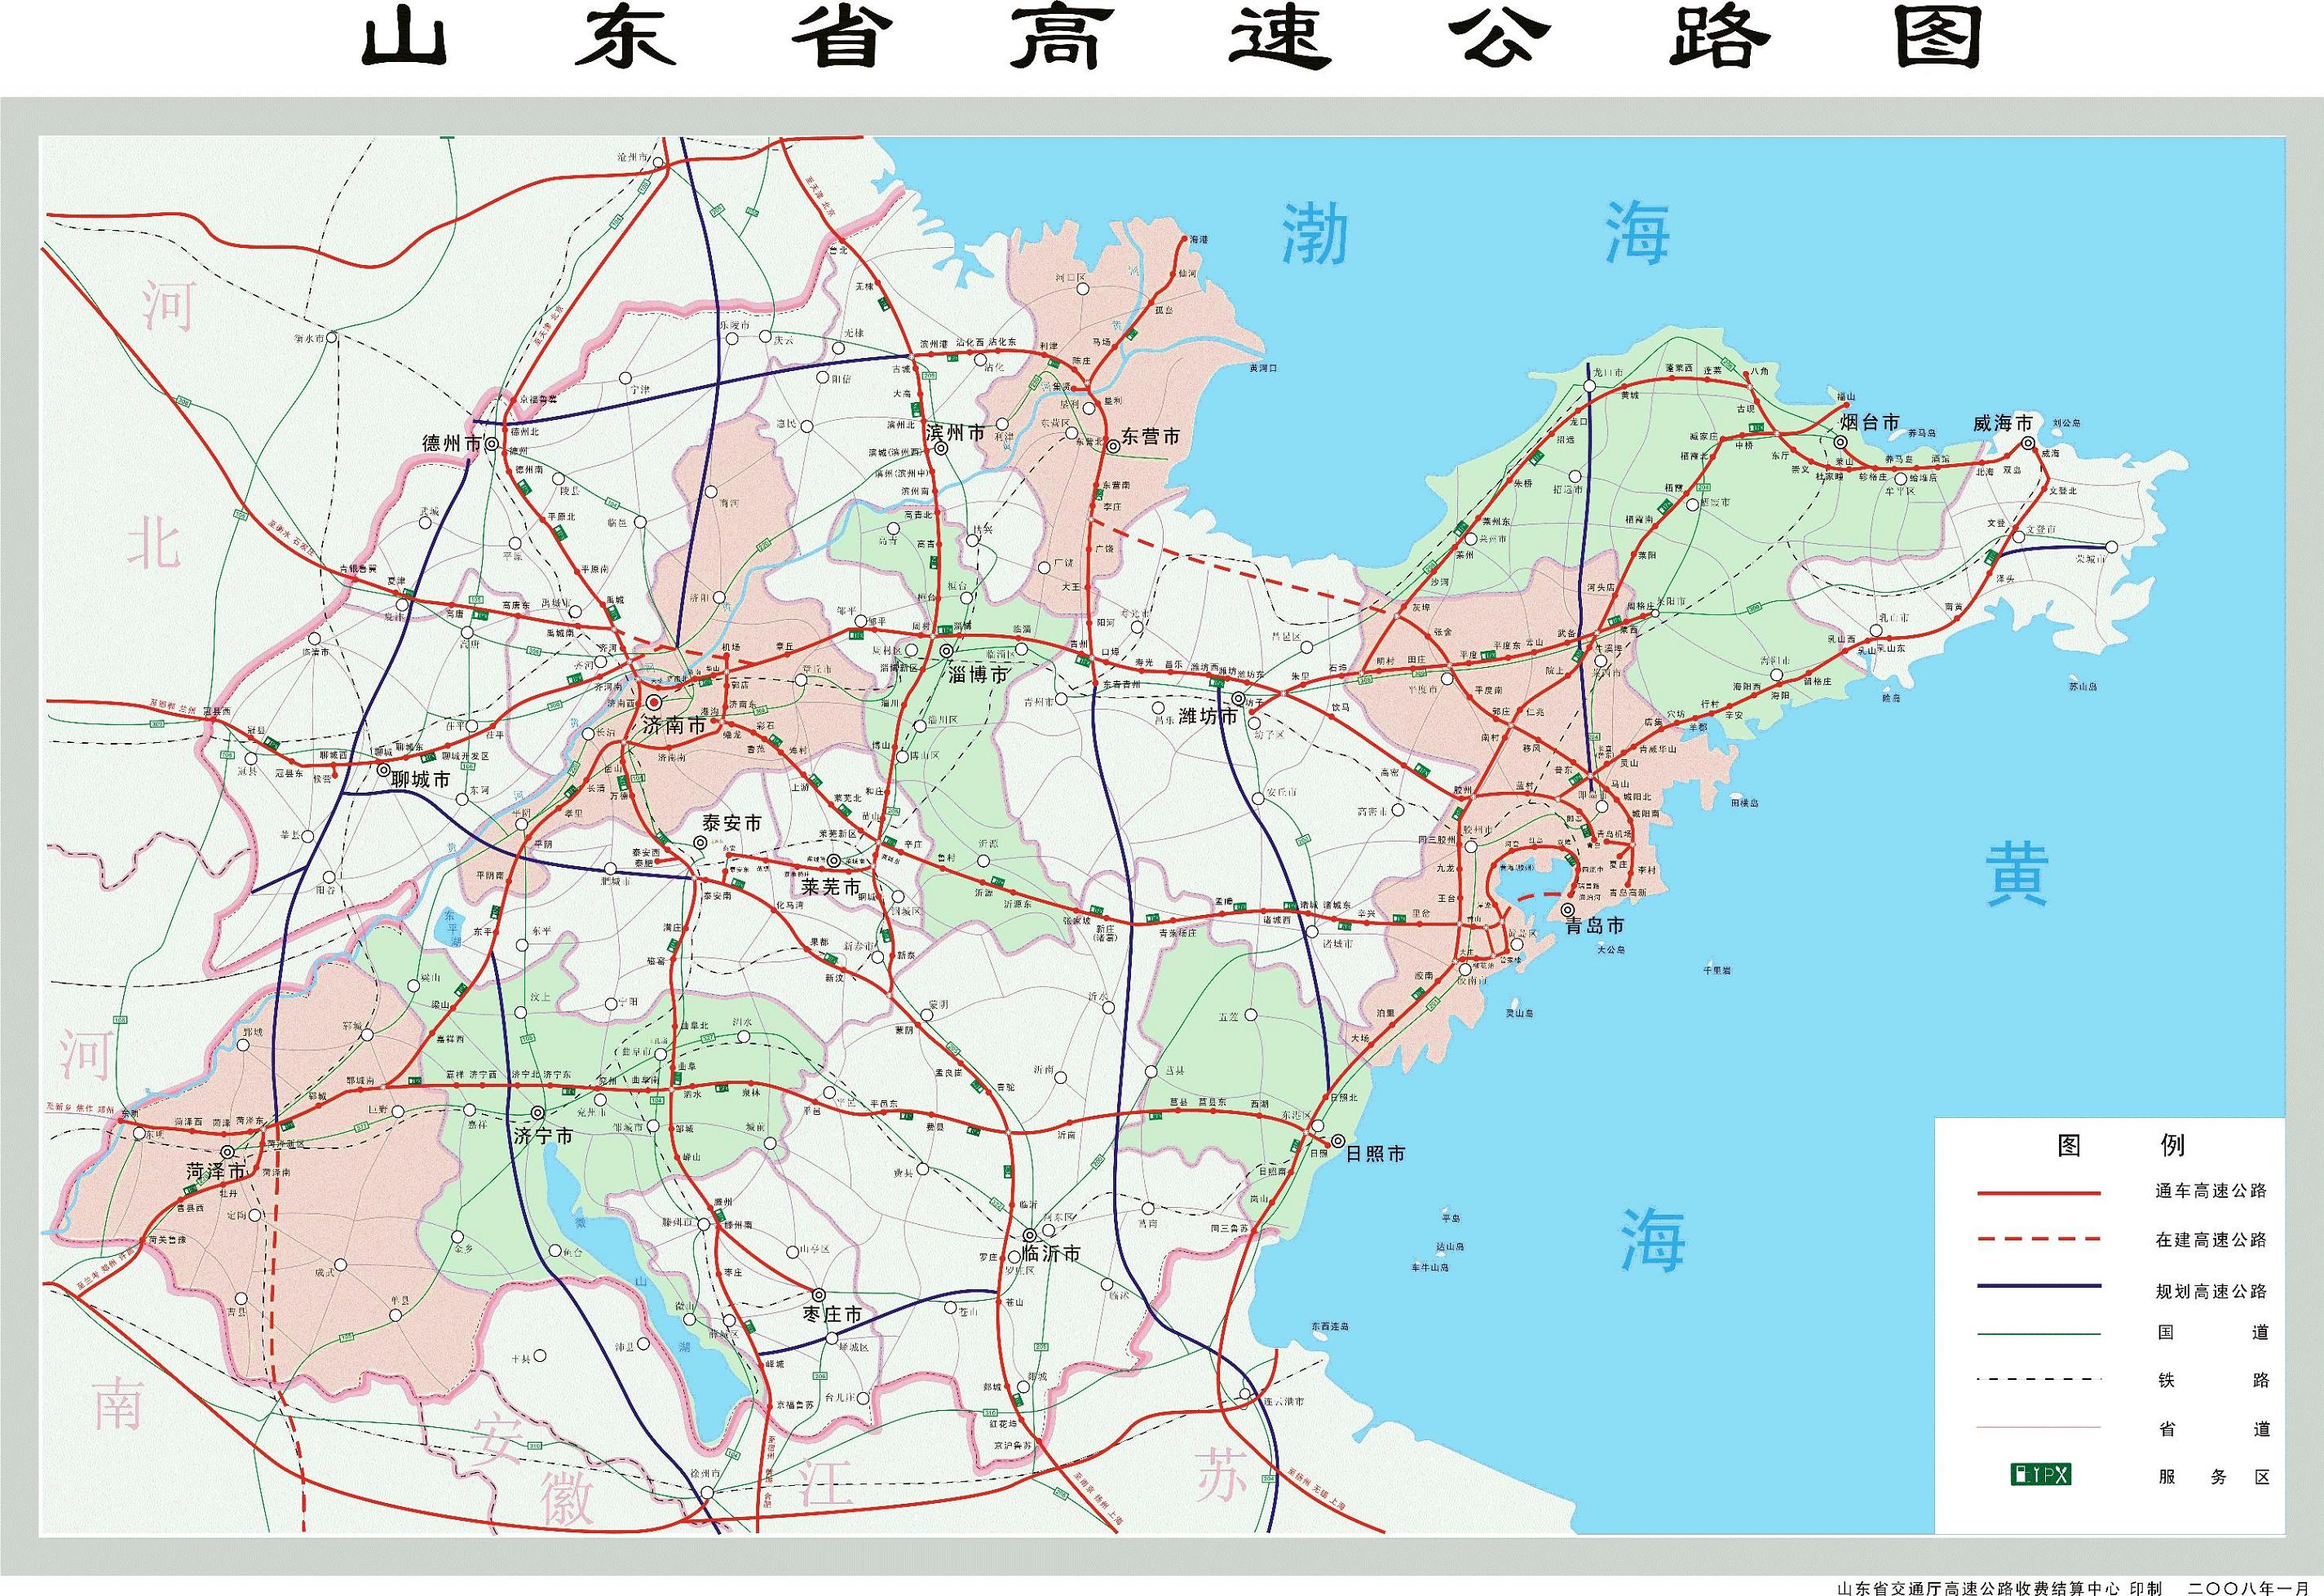 山东省高速公路图,北面的虚线威乌高速潍坊段已通车.